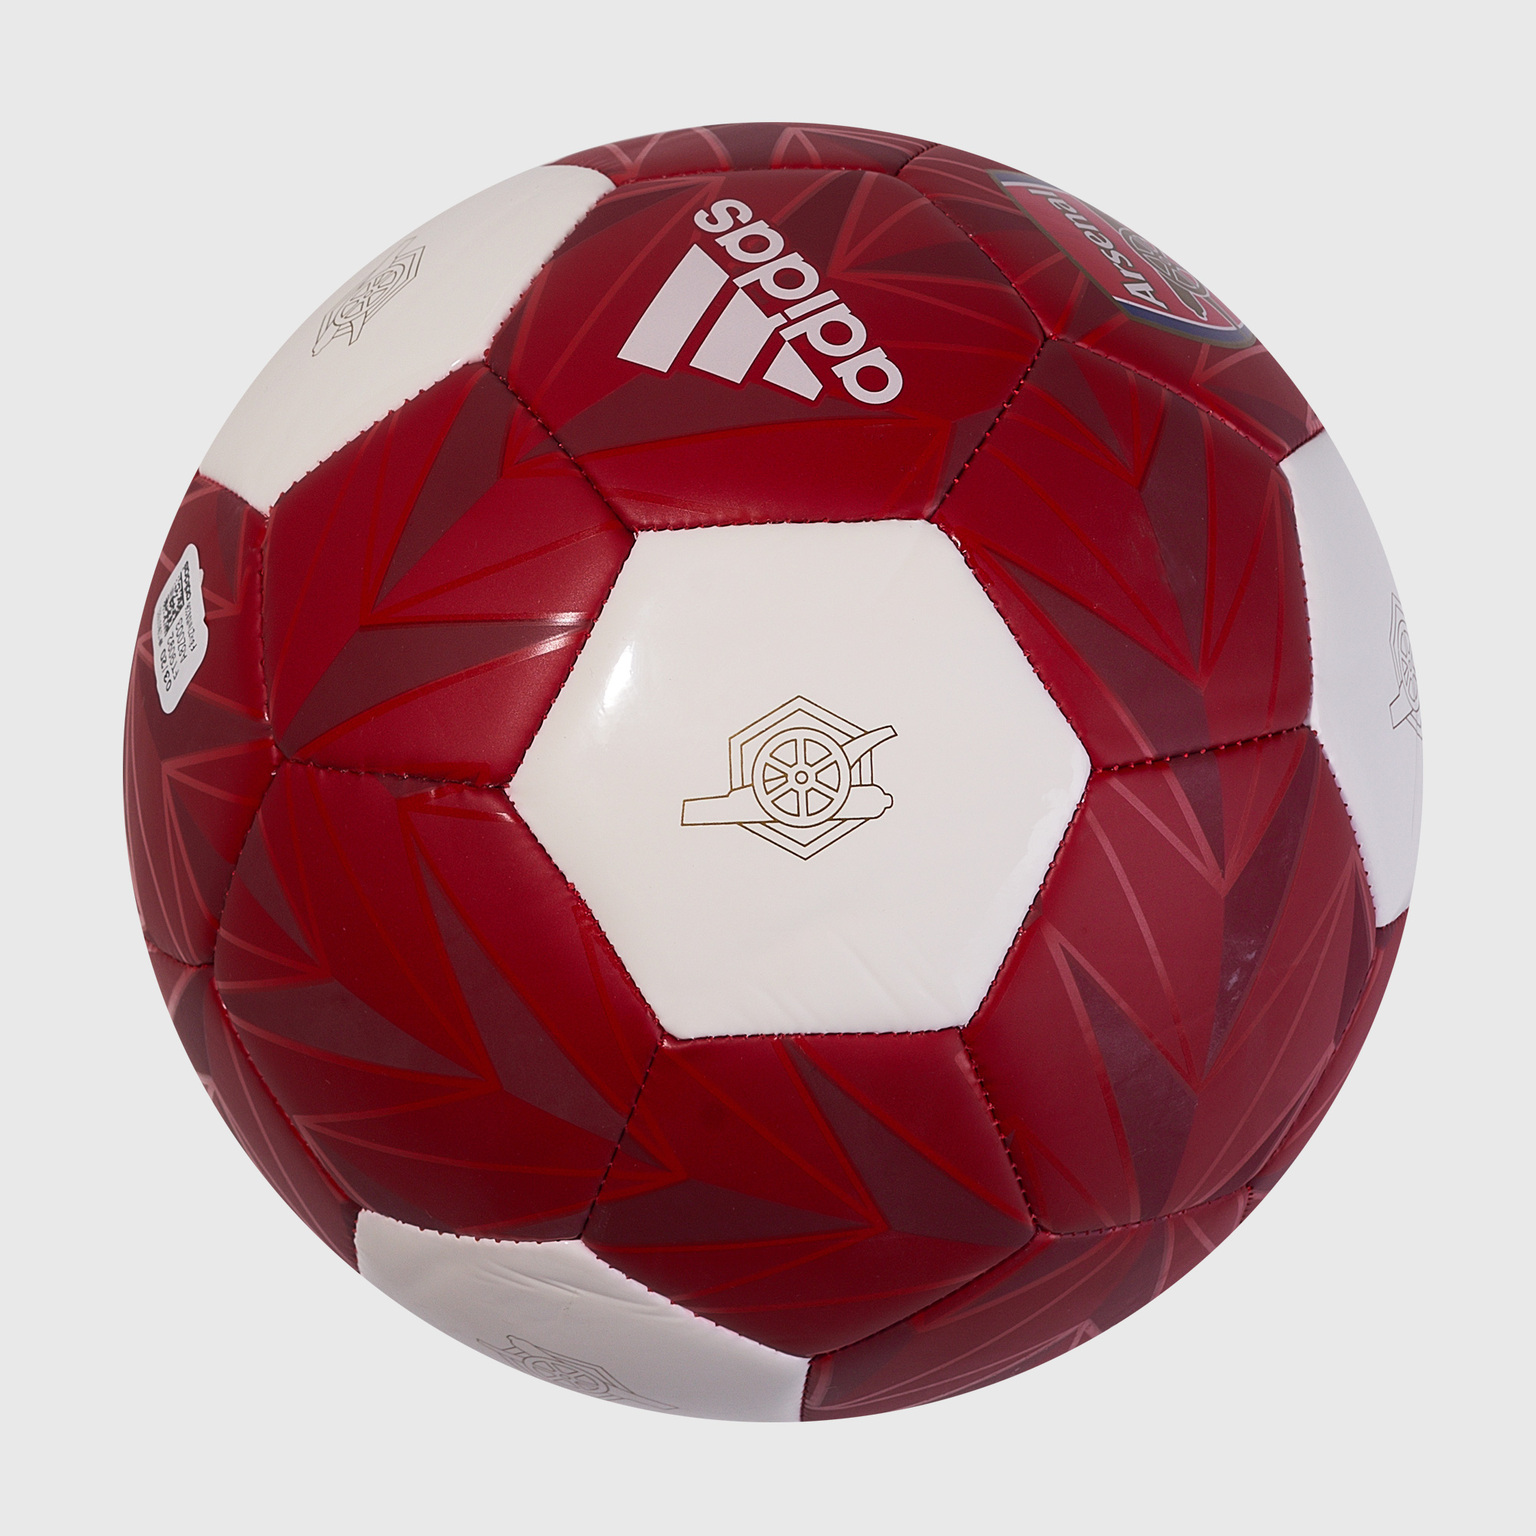 Футбольный мяч Adidas Arsenal FT9092